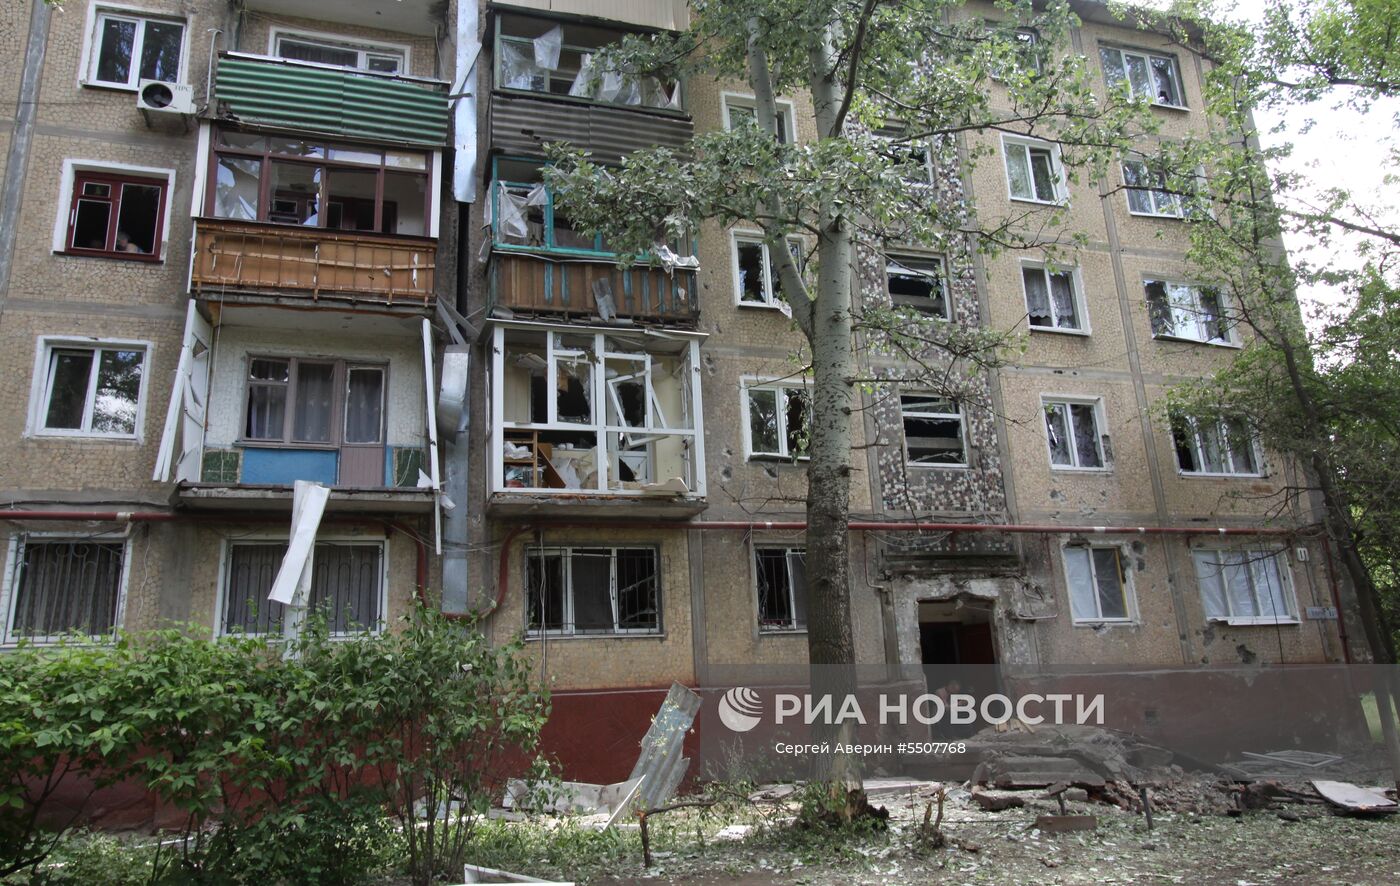 Последствия обстрелов населенных пунктов в Донбассе украинскими силовиками